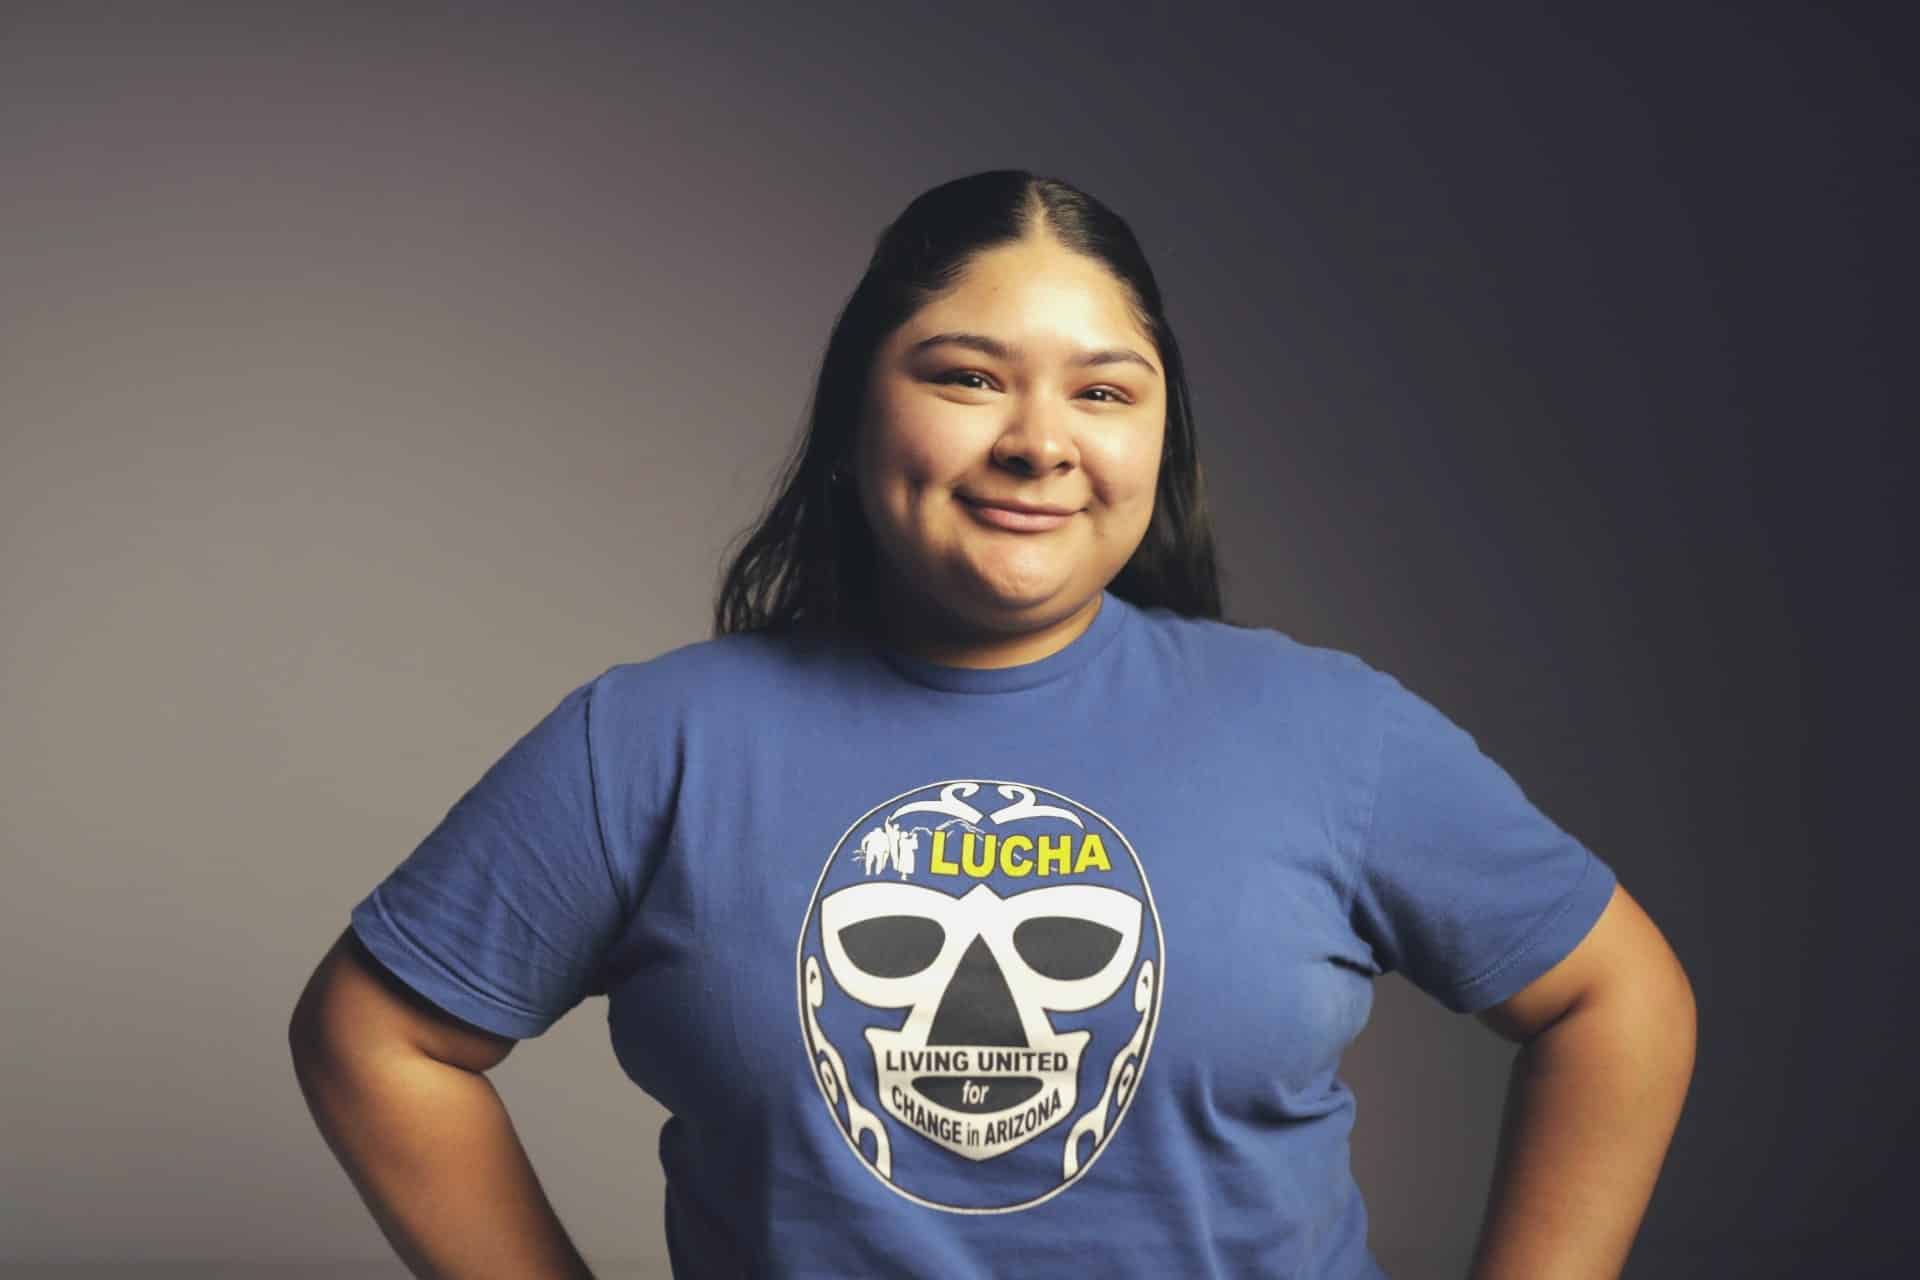 LUCHA surgió en 2010, la organización quiere ver en el estado de Arizona un cambio a favor de la comunidad migrante: Karime Rodríguez – Conecta Arizona